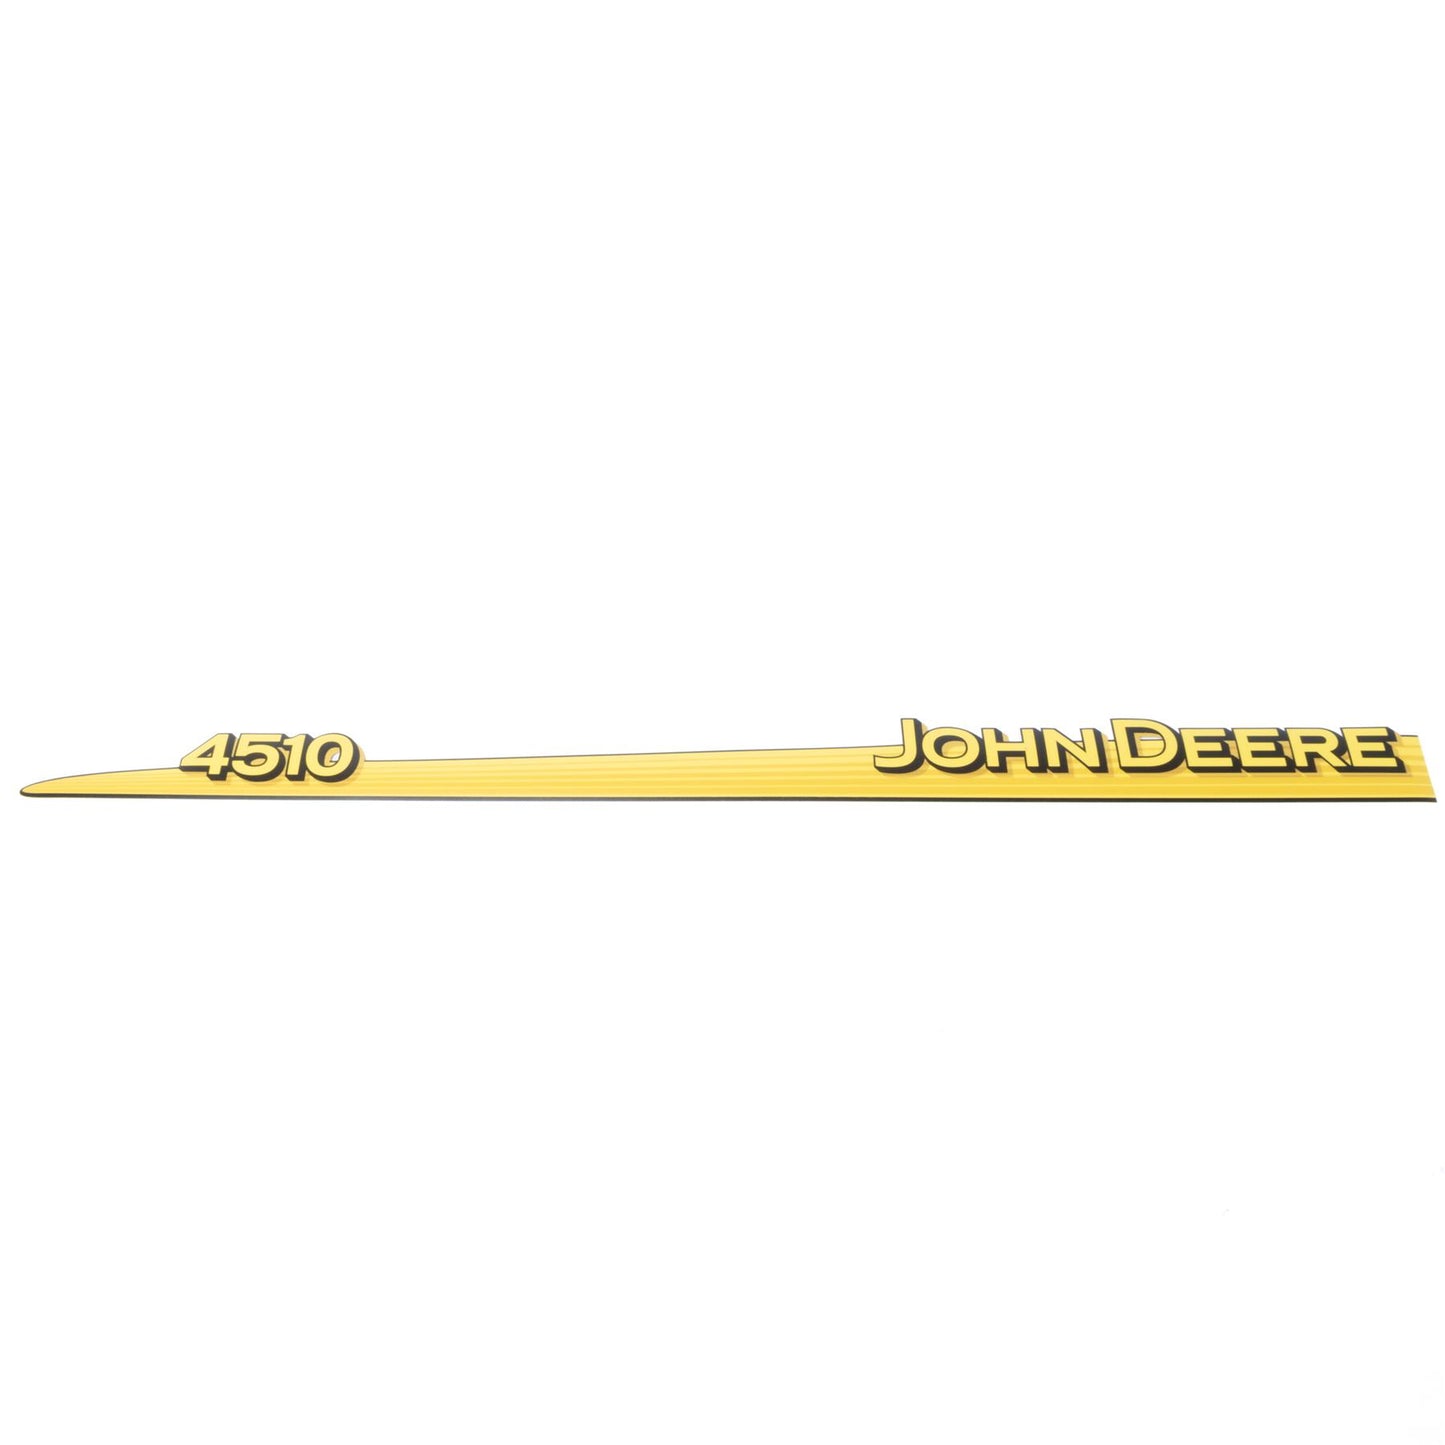 John Deere Decal - 4510 - Both Sides - LVU12289 LVU12290